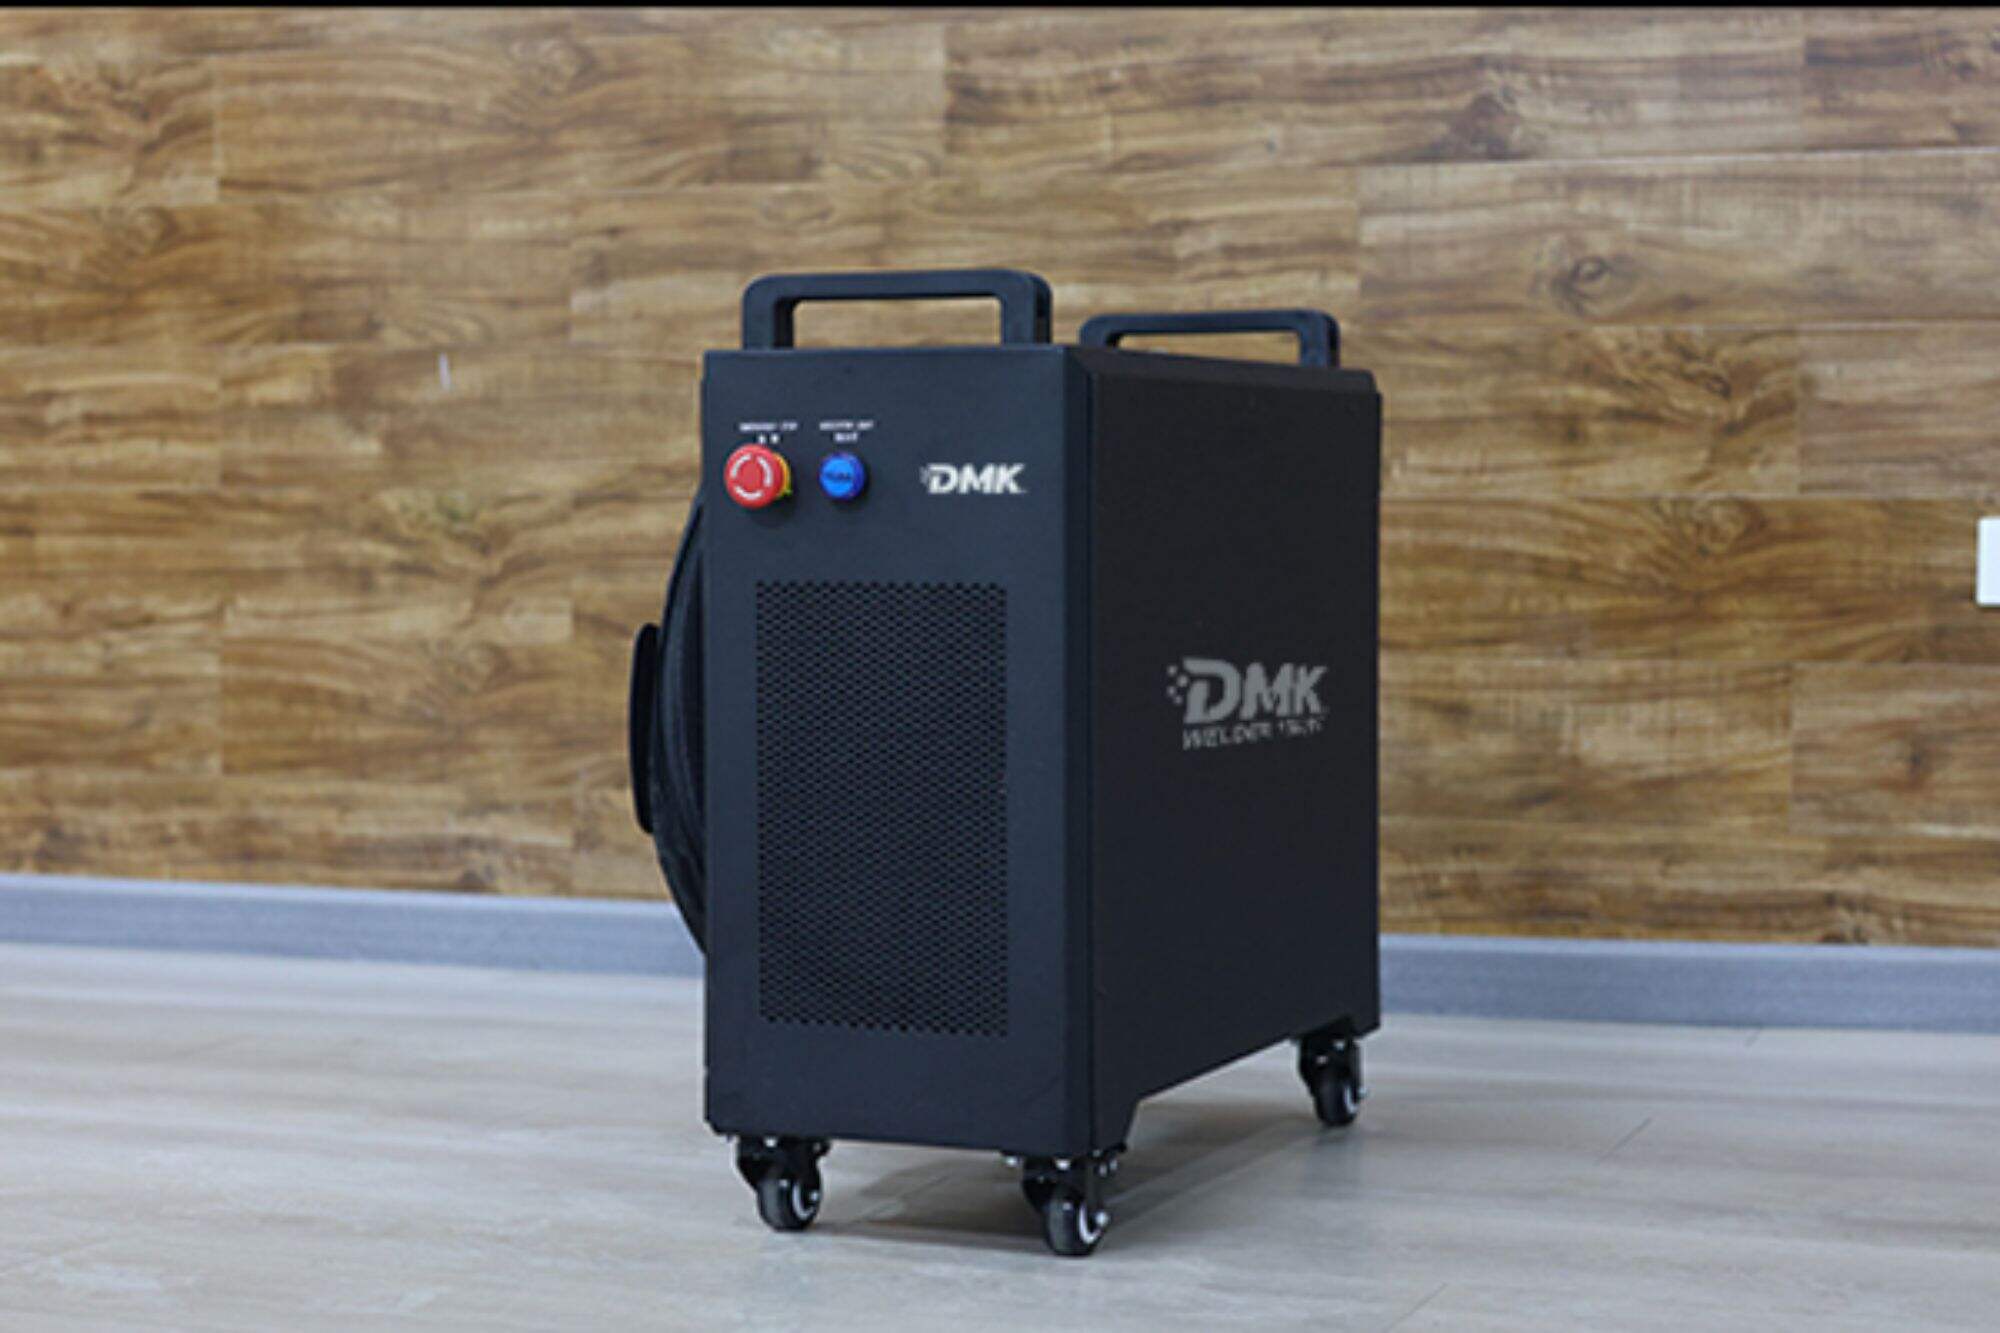 Instalacja mini spawarki laserowej chłodzonej powietrzem DMK Samouczek instalacji mini spawarki laserowej chłodzonej powietrzem DMK